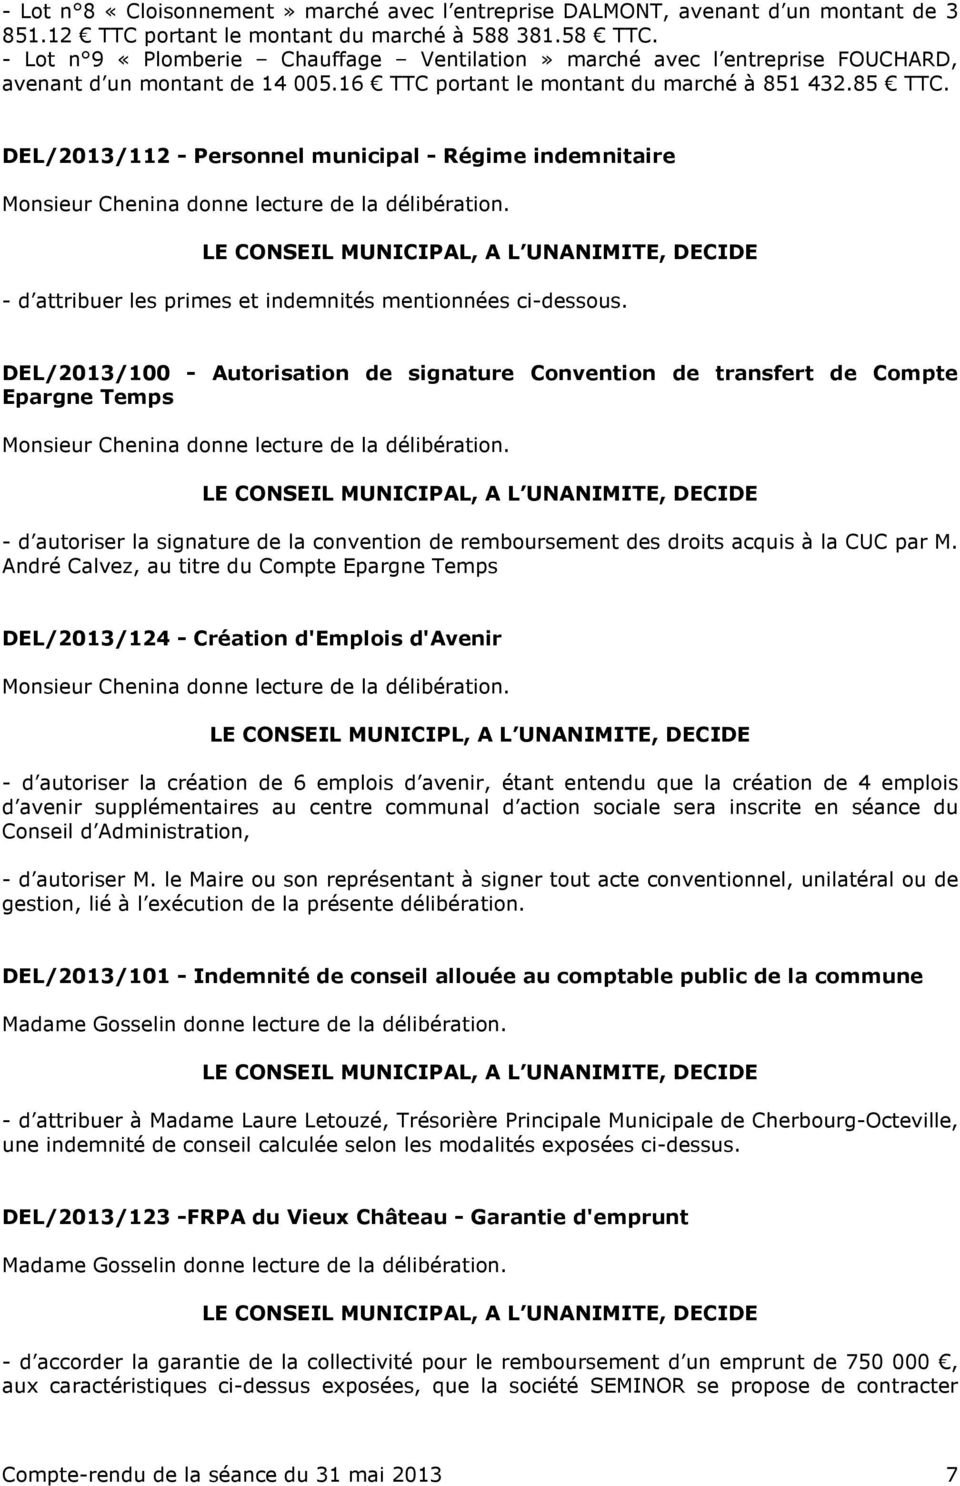 DEL/2013/112 - Personnel municipal - Régime indemnitaire Monsieur Chenina donne lecture de la délibération. - d attribuer les primes et indemnités mentionnées ci-dessous.